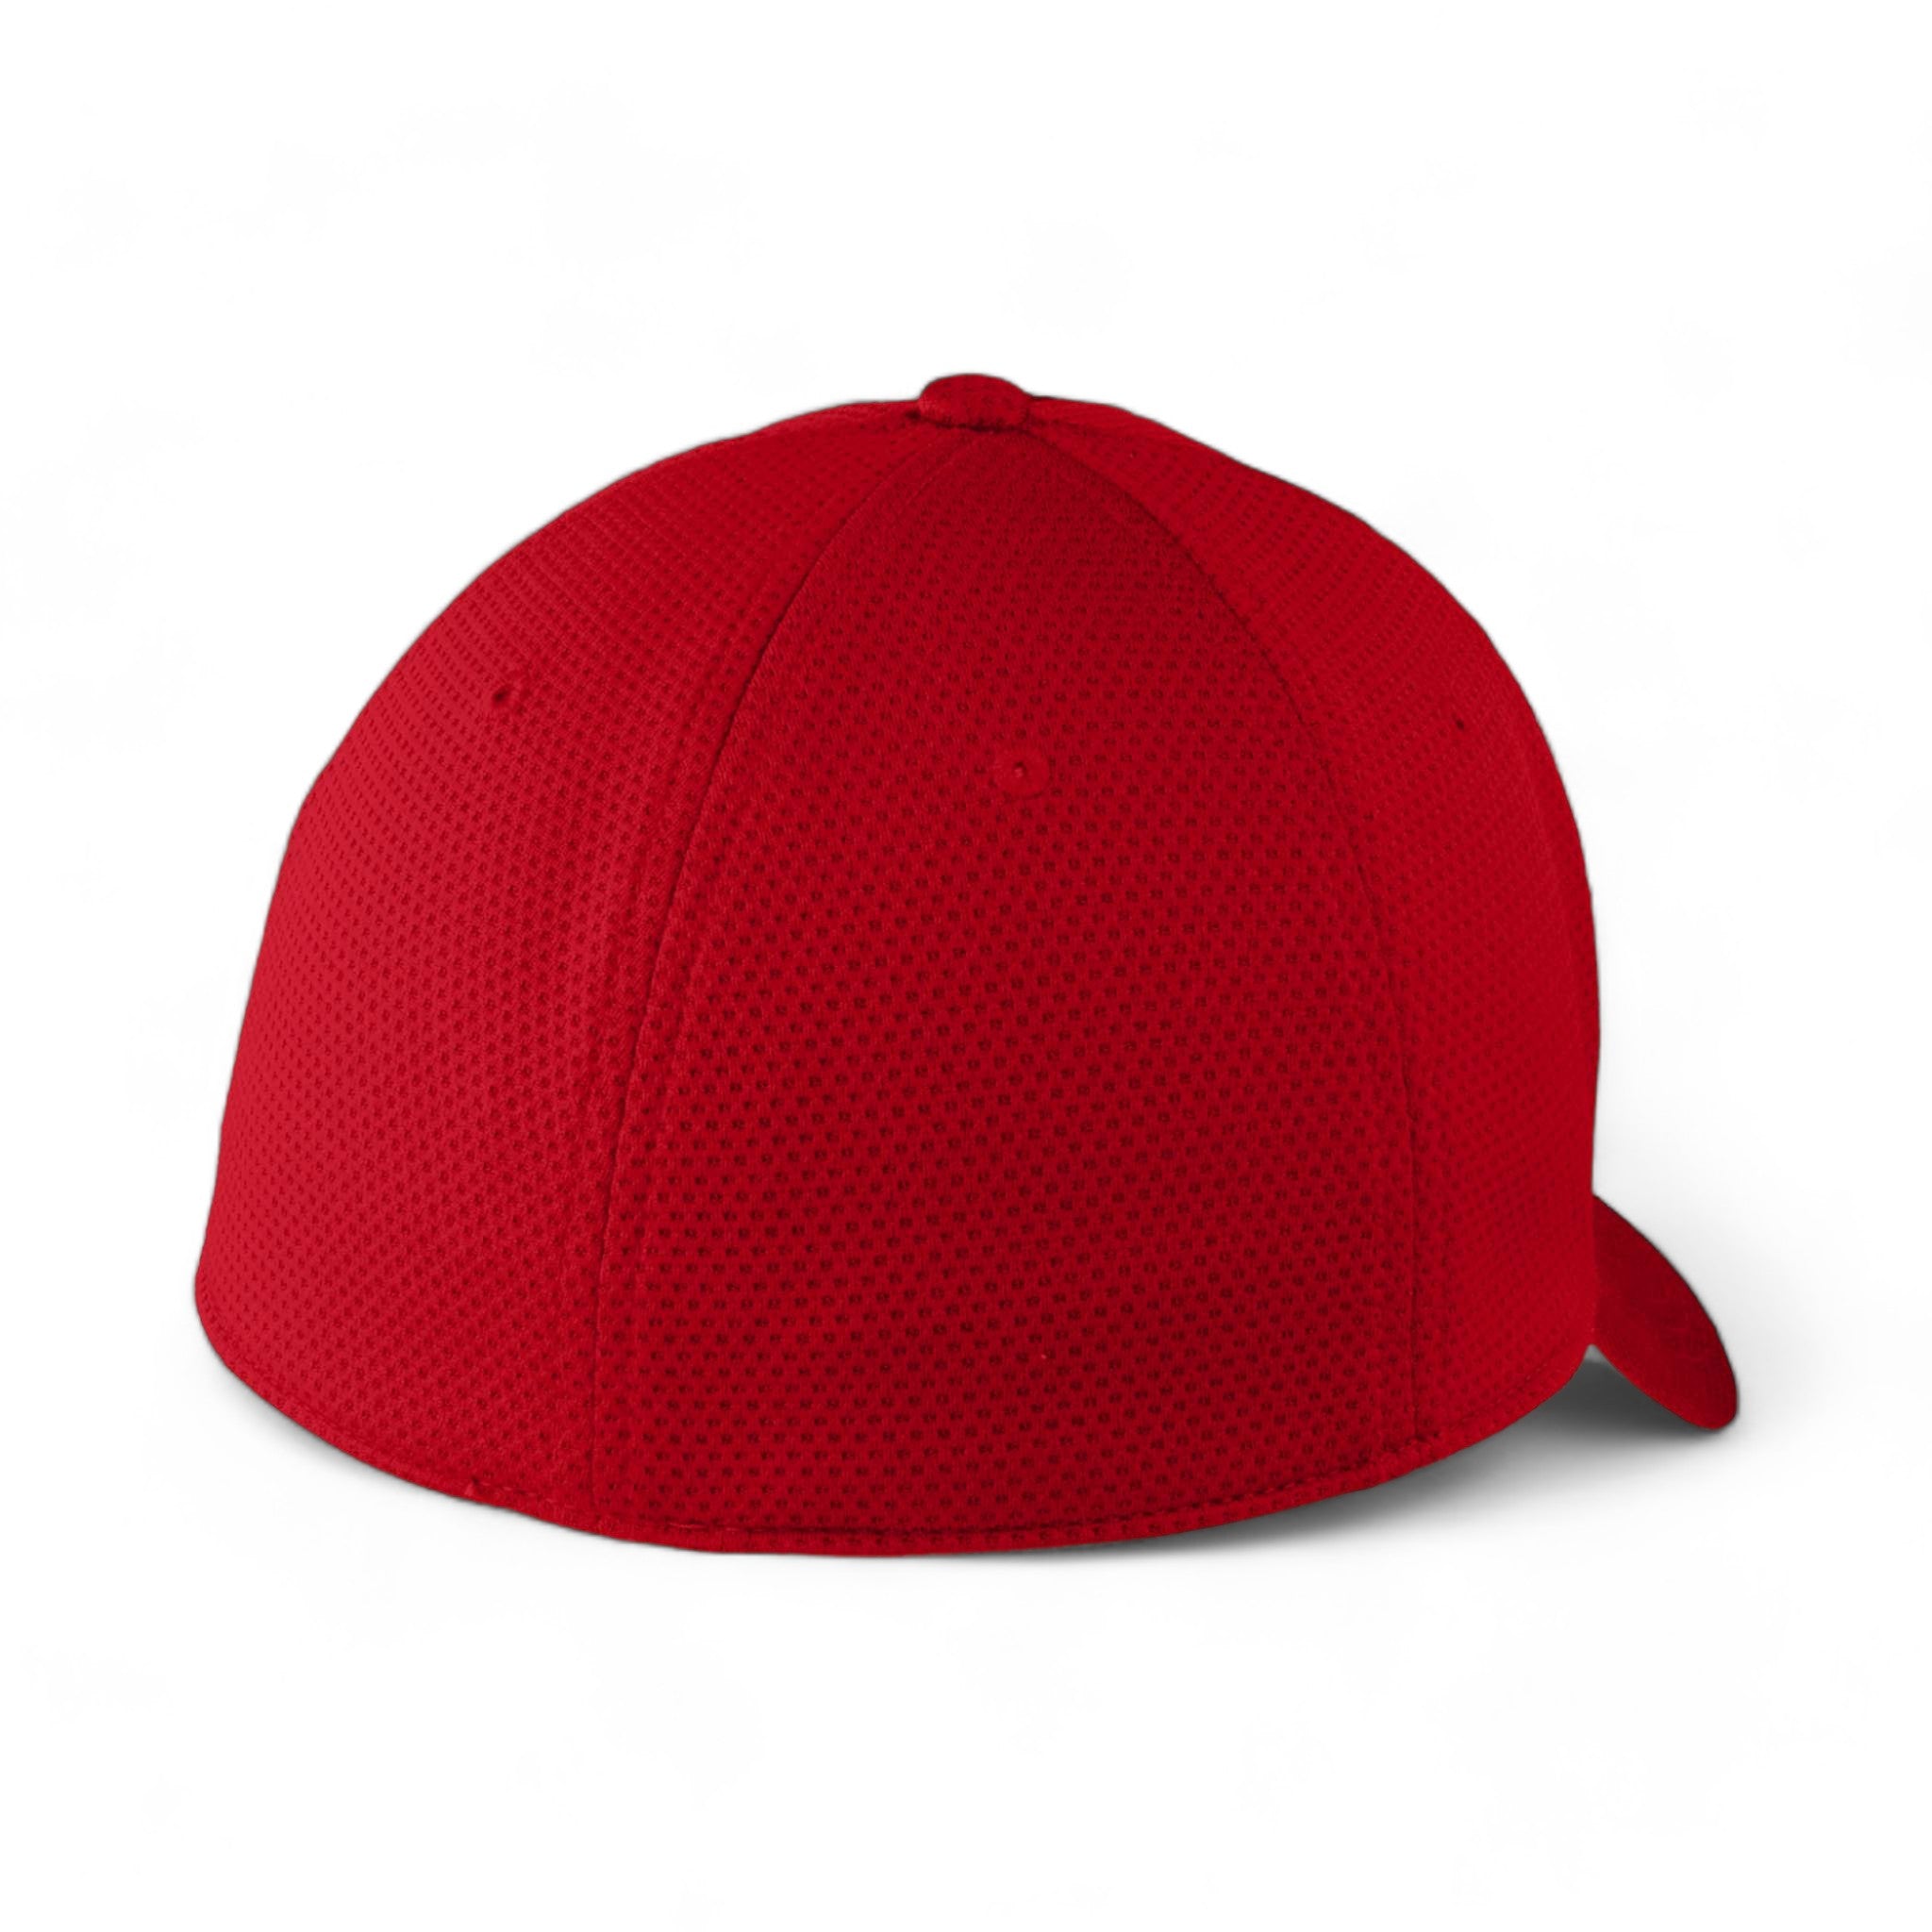 Back view of New Era NE1090 custom hat in scarlet